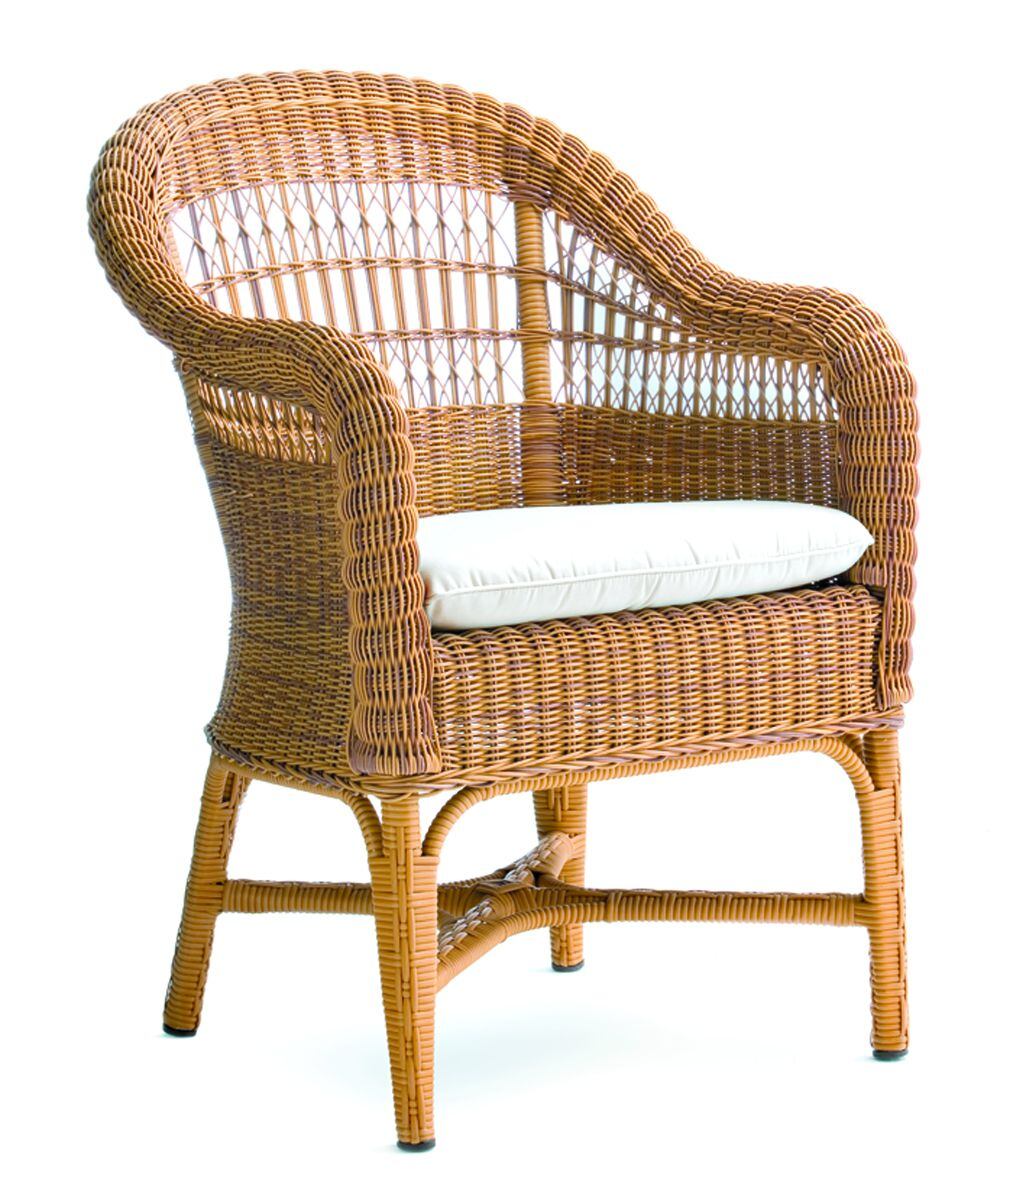 El sillón Alga, obra maestra de artesanía de la década de 1920.